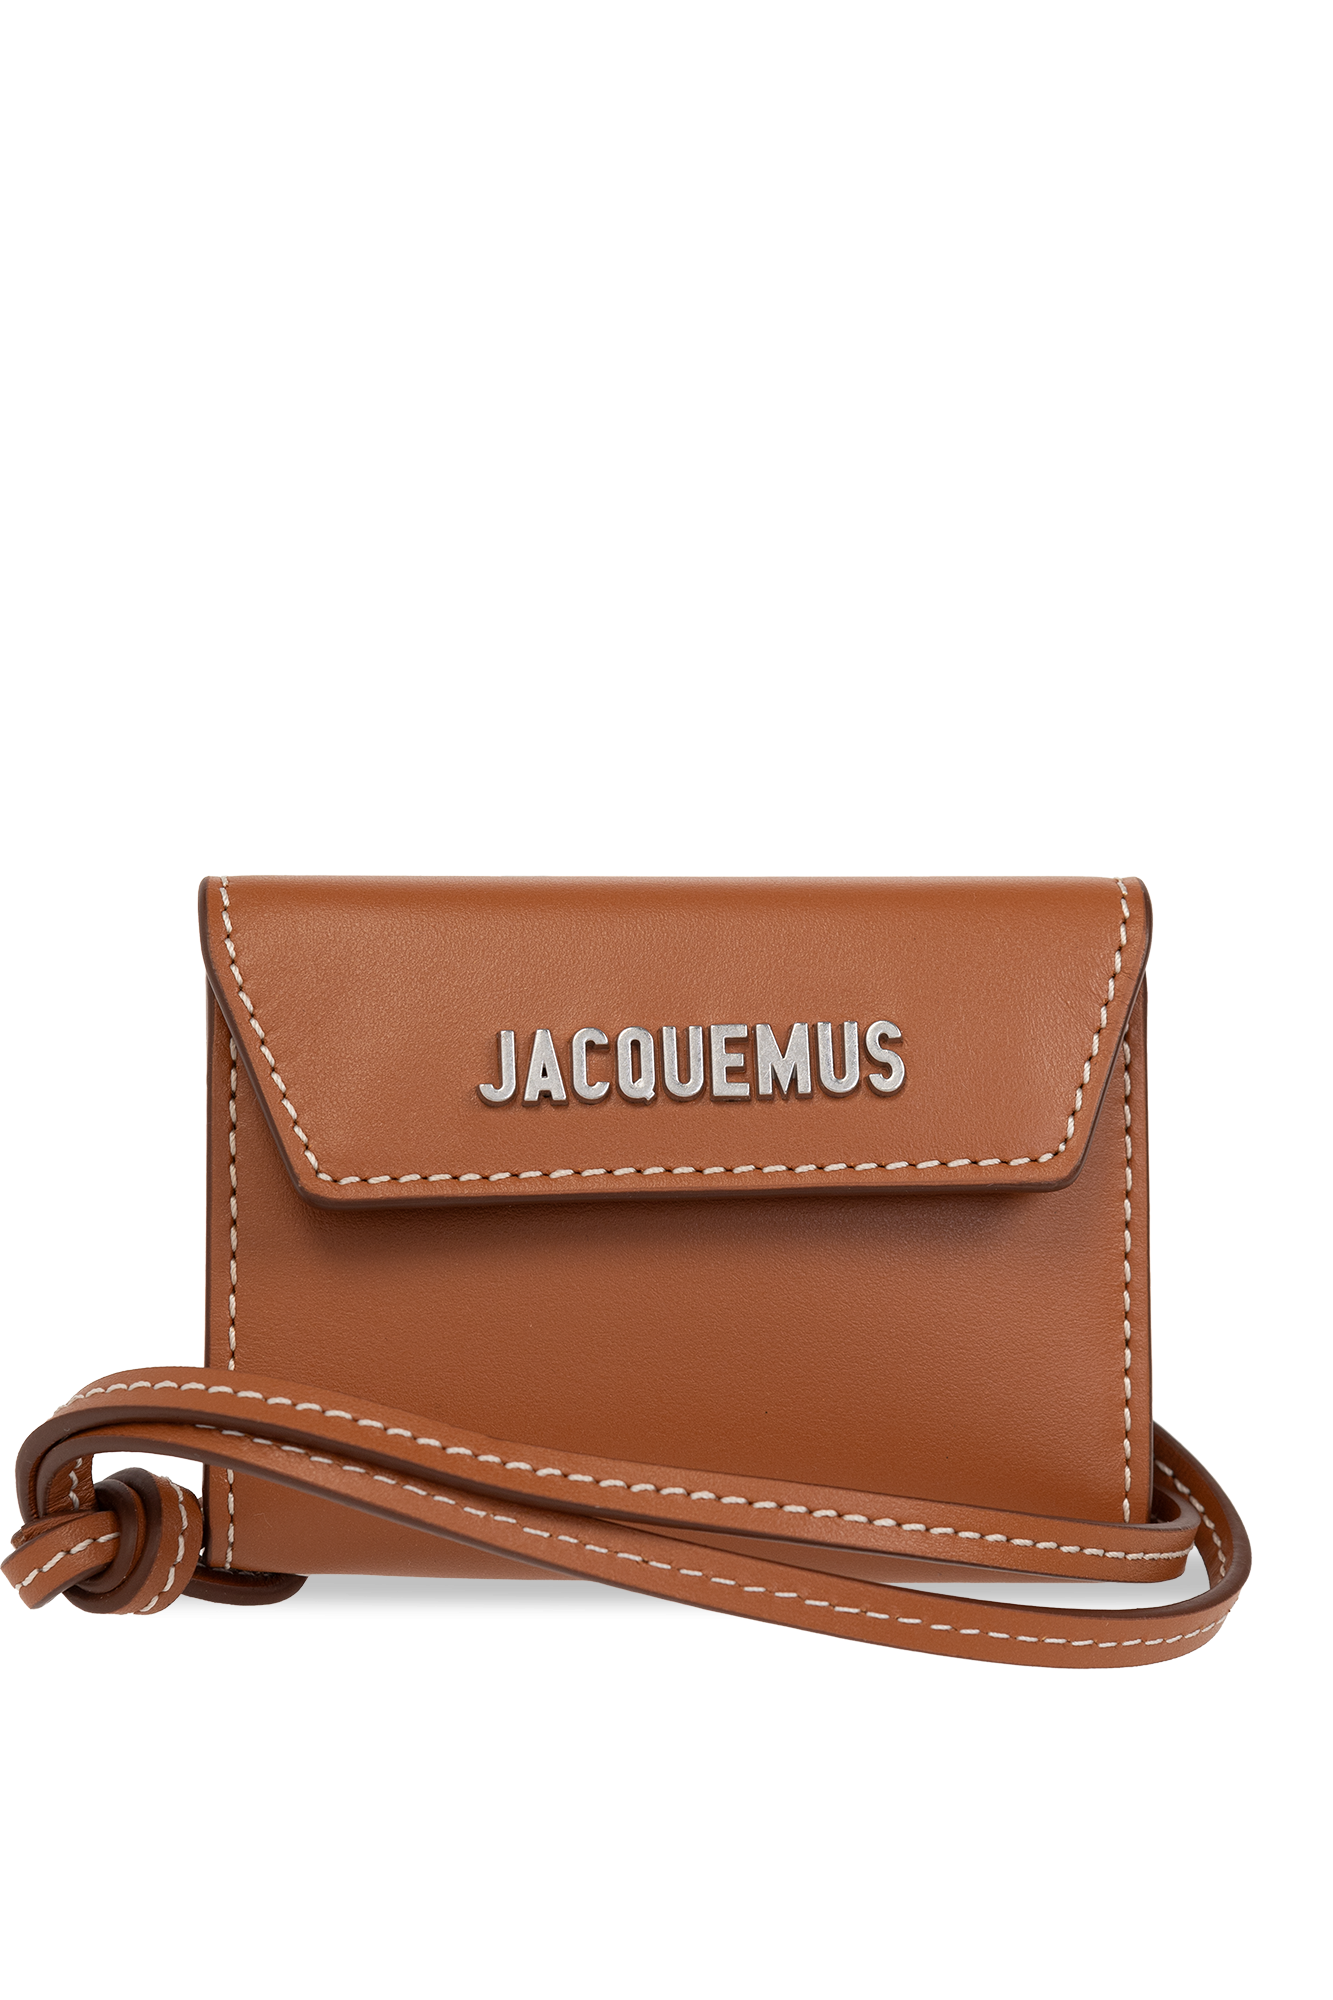 Jacquemus 'Le Porte Jacquemu' wallet with strap, Men's Accessories